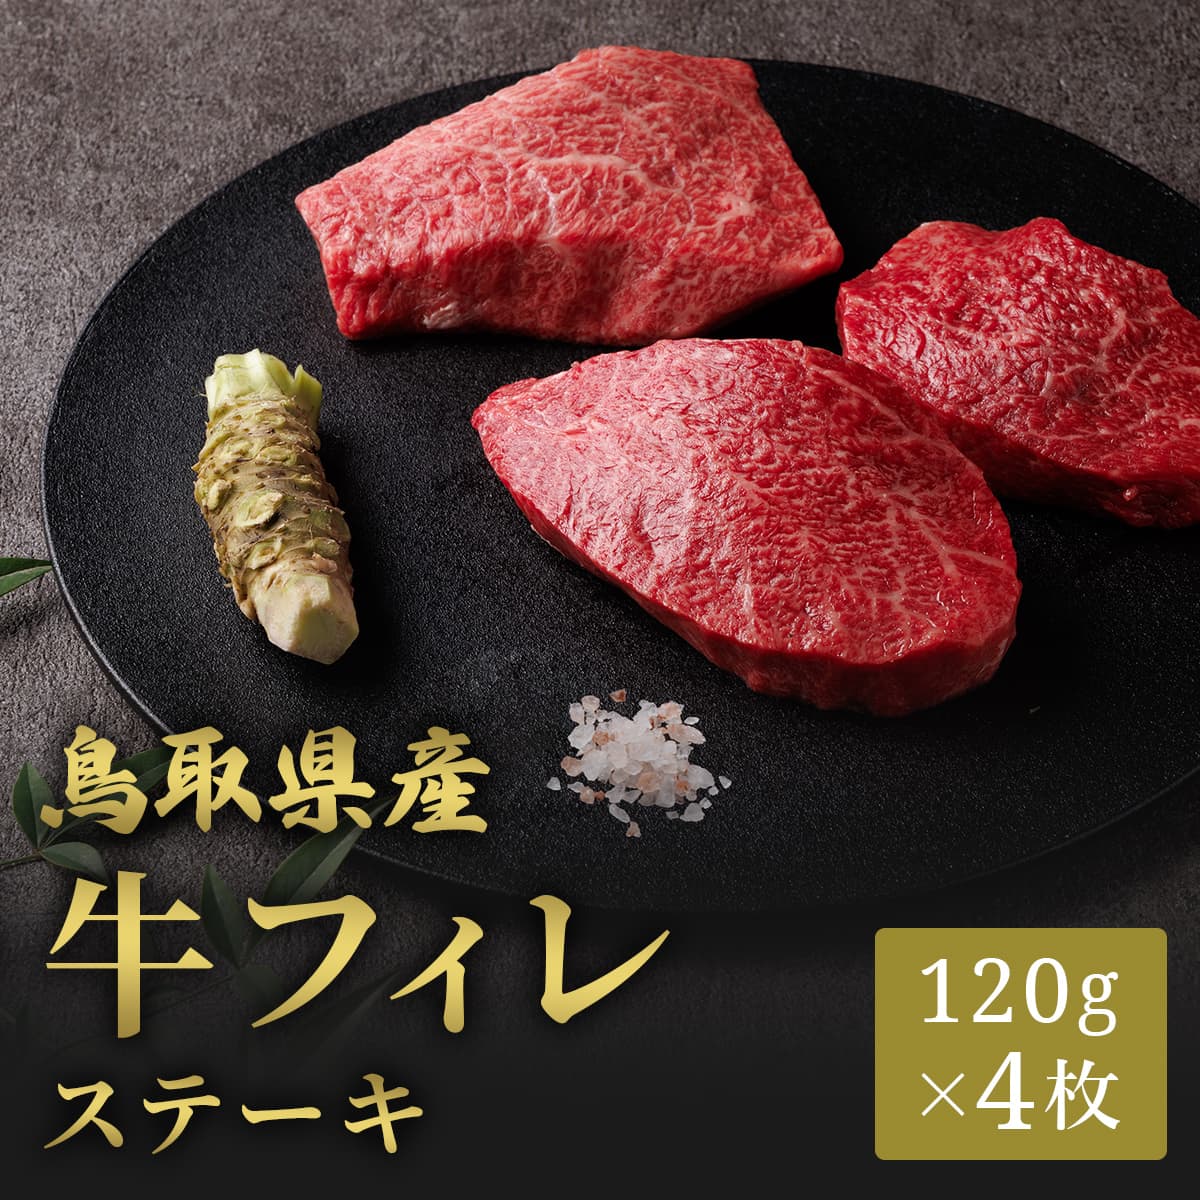 鳥取県産 牛フィレステーキ 120g×4枚